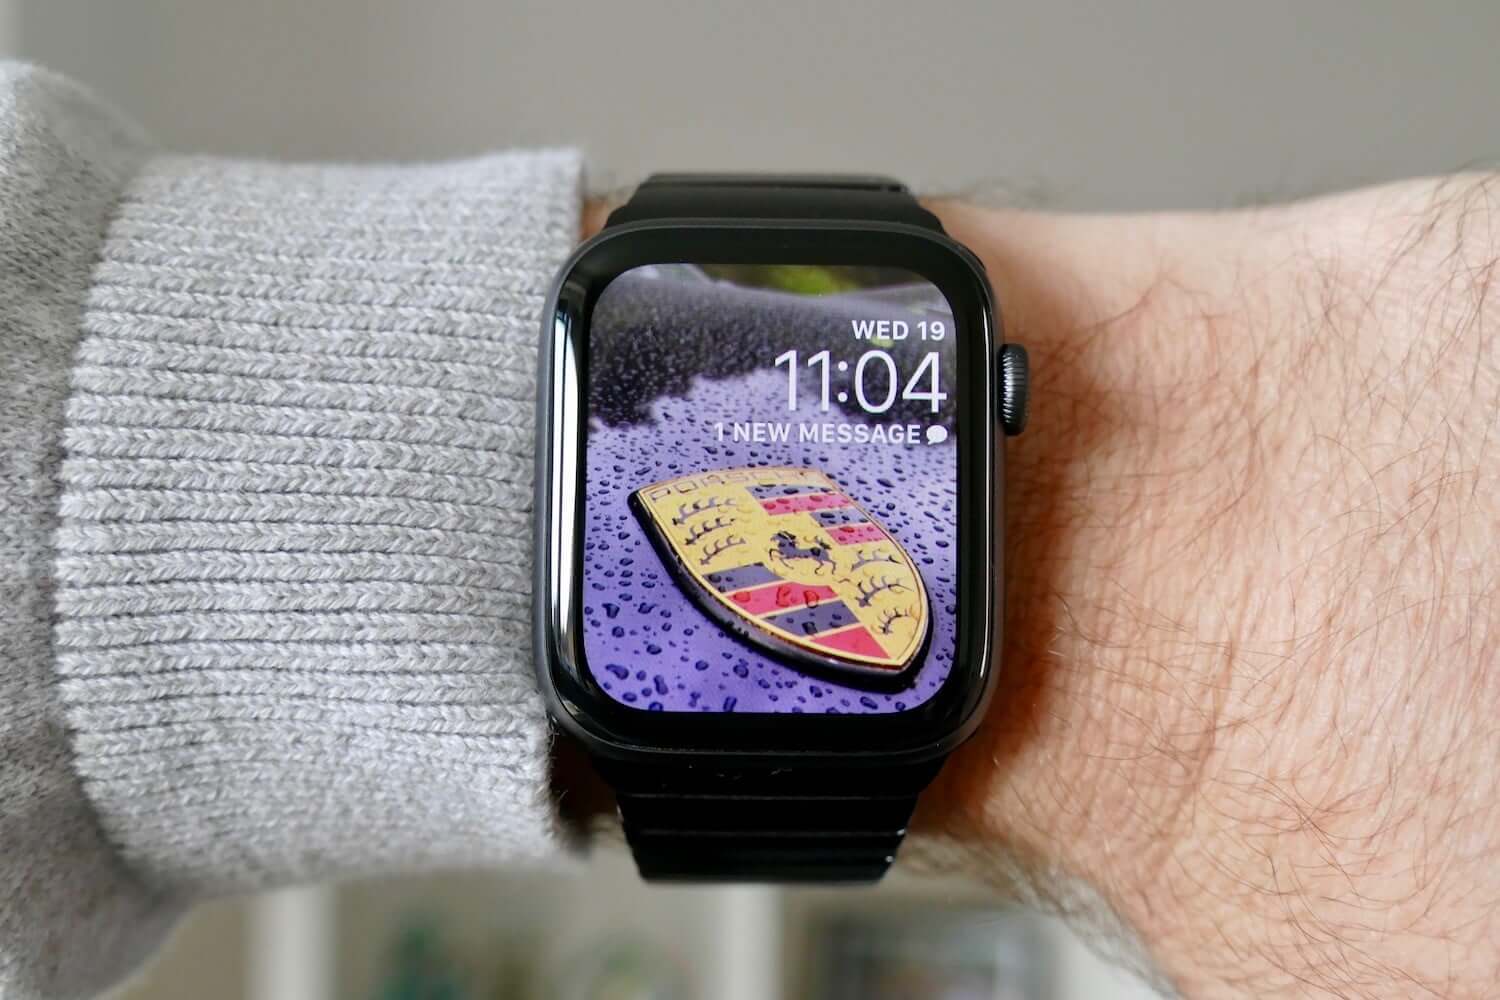 Thay đổi hình nền trên Apple Watch của bạn sẽ mang đến cho bạn sự yêu thích khi sử dụng. Với sự đa dạng trong thiết kế hình nền và tính năng đổi hình nền chuyên nghiệp, bạn sẽ có thể thỏa sức khám phá và tùy chỉnh hình nền theo phong cách của mình. Hãy thay đổi hình nền trên Apple Watch của bạn ngay hôm nay để có trải nghiệm tuyệt vời nhé!